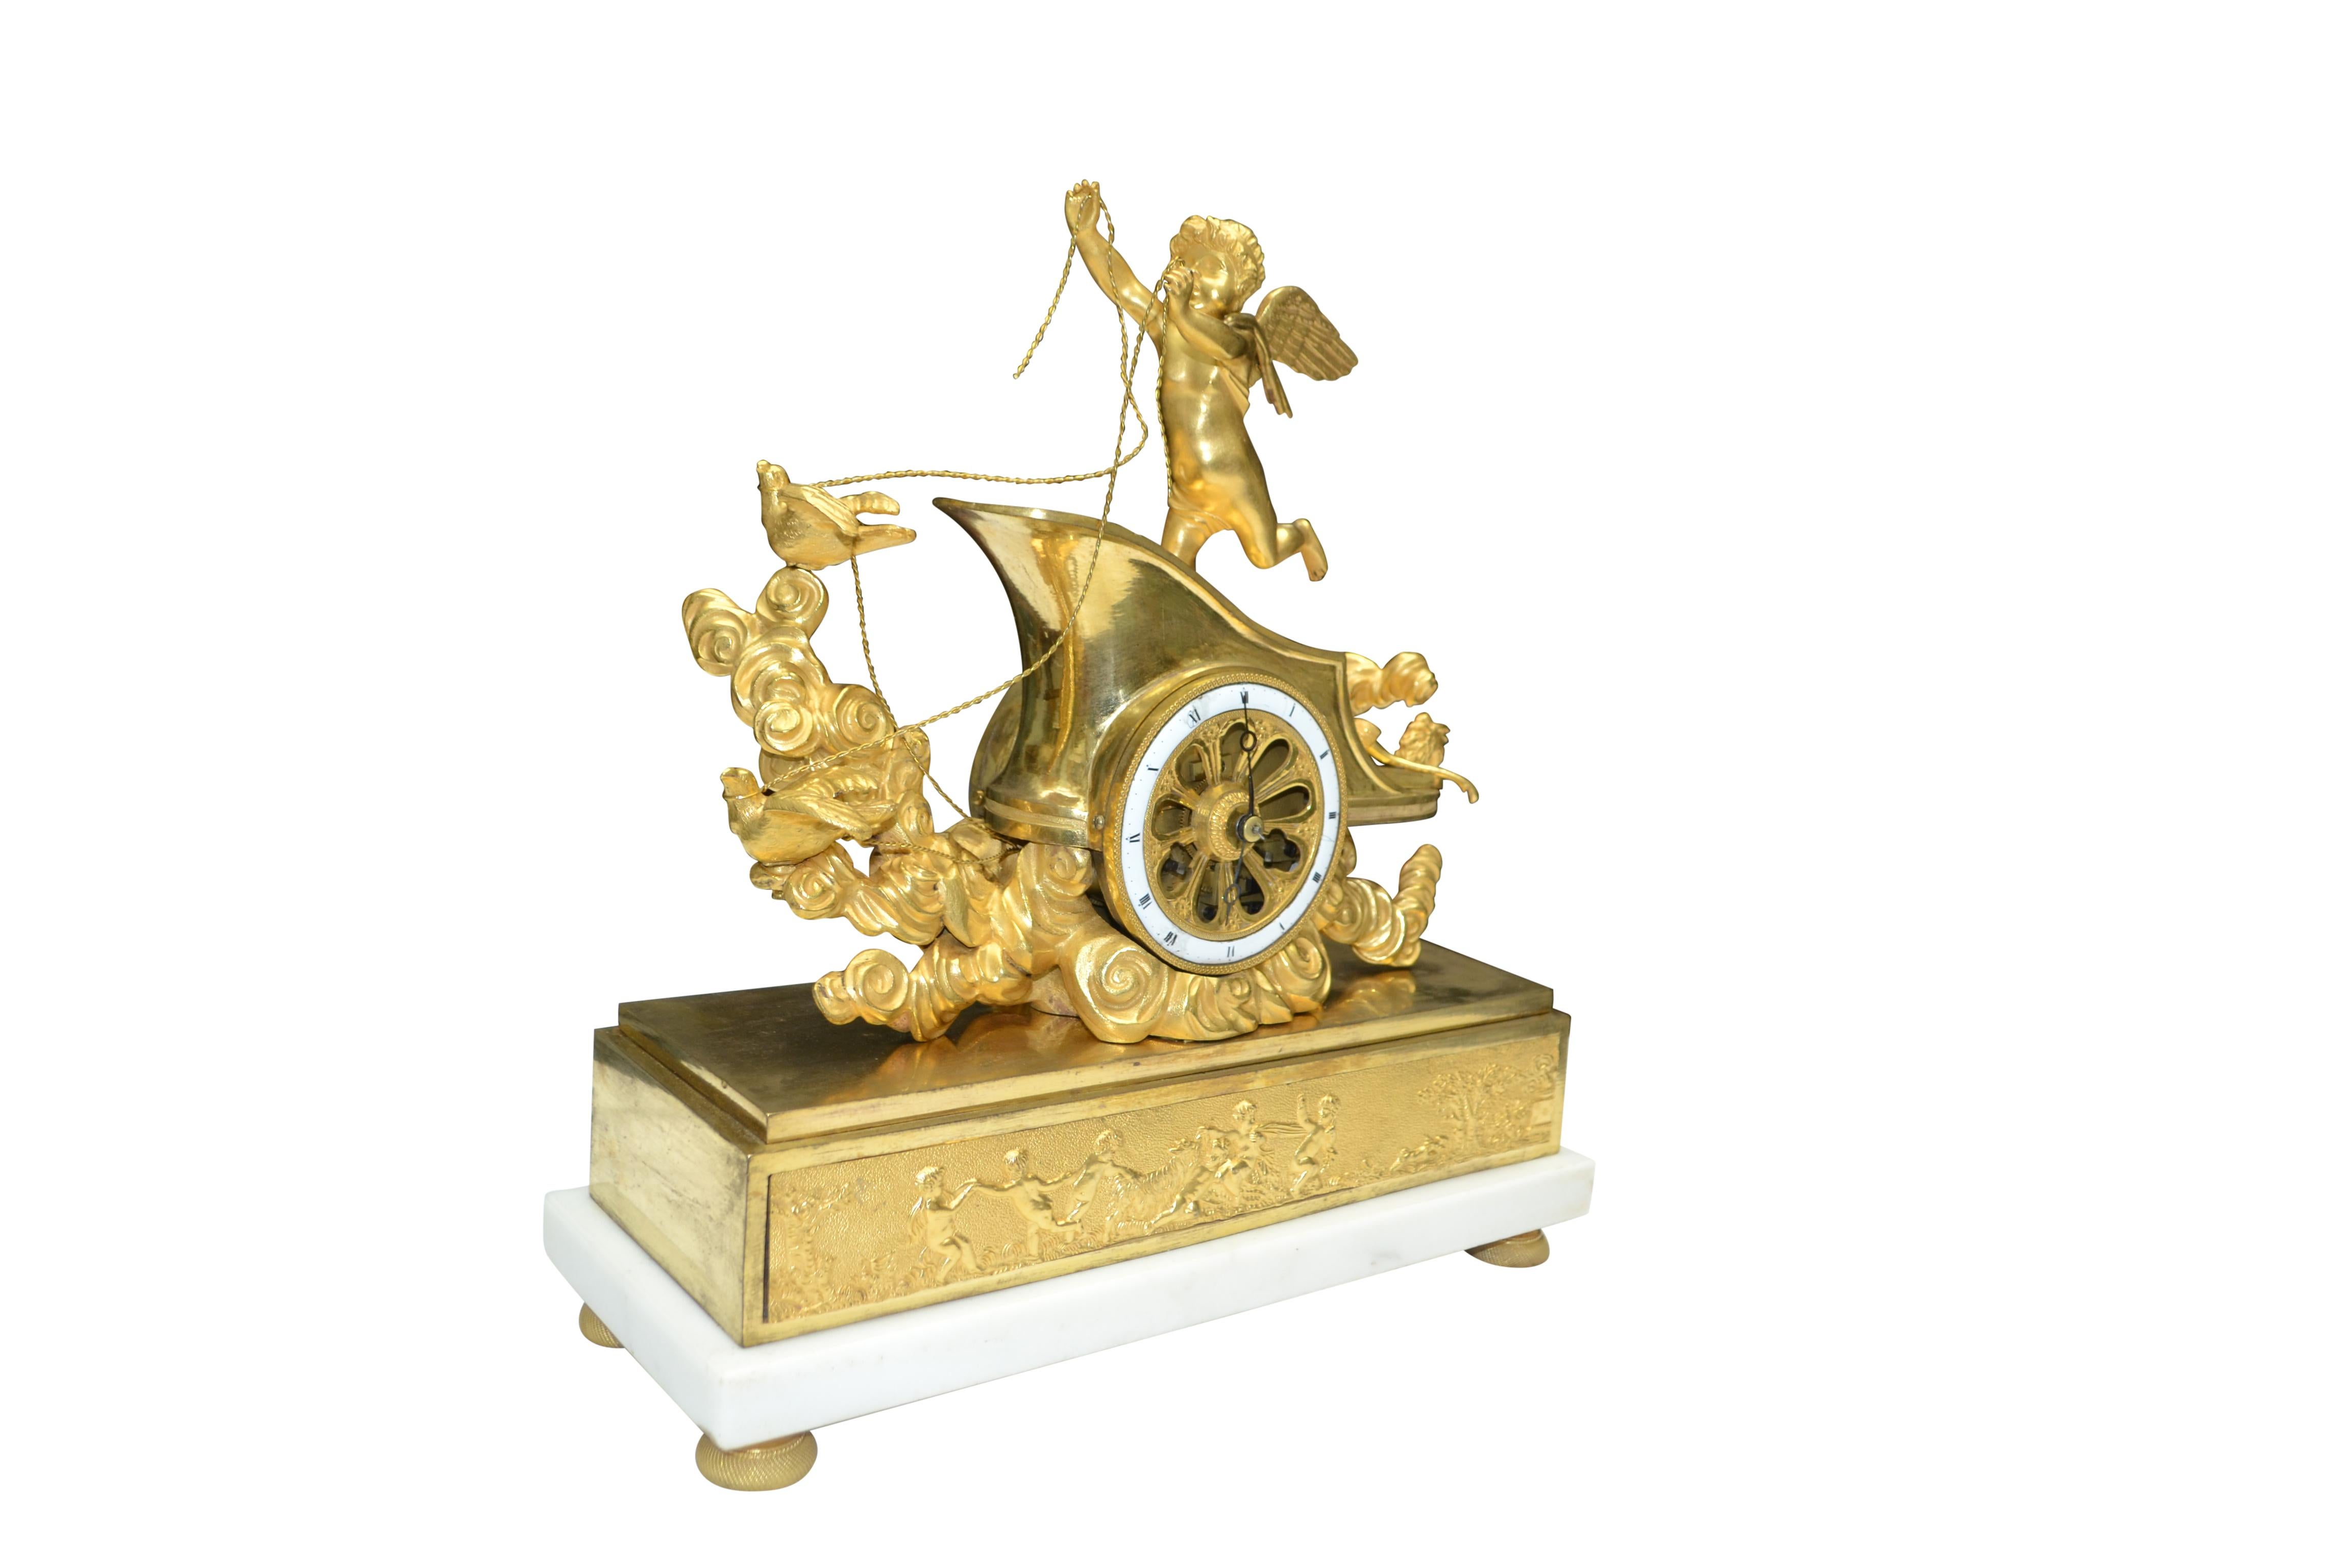 L'horloge représente un Cupidon ailé debout sur son char tiré par deux colombes et soutenu par des nuages. Cupidon tient les rênes de deux colombes qui semblent guider le char. La 